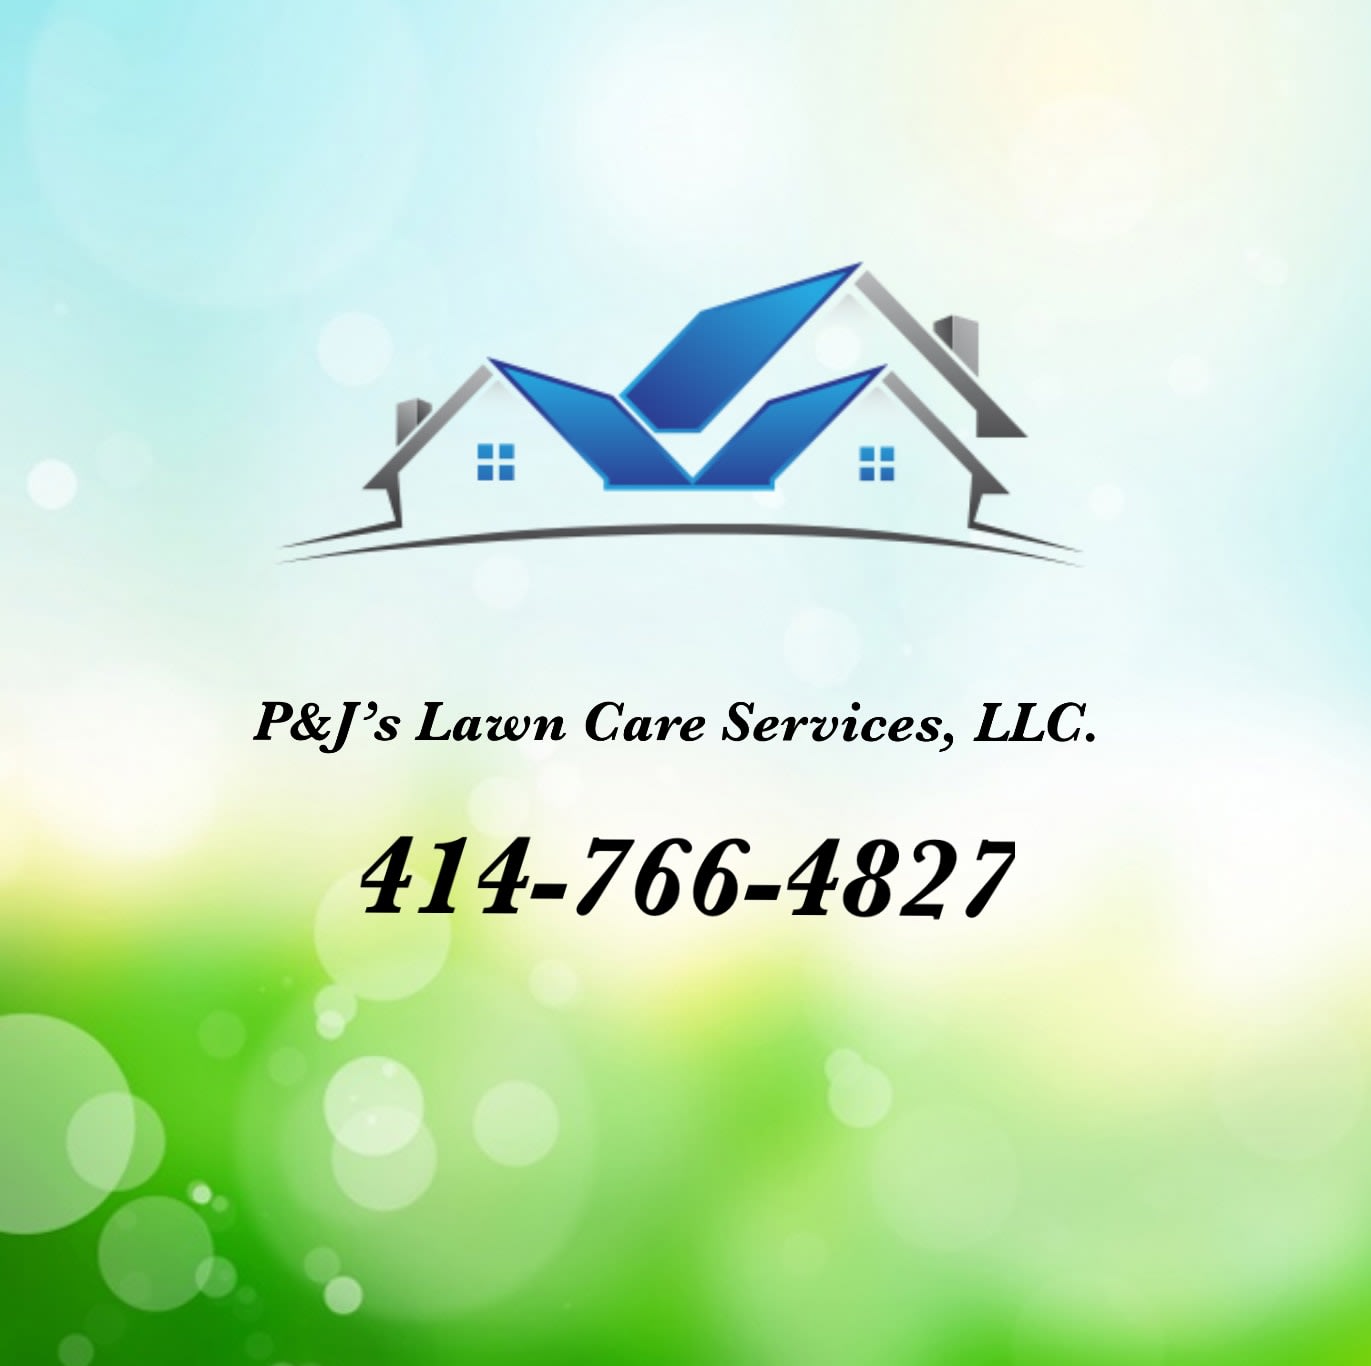 P & J's Lawn Care Services